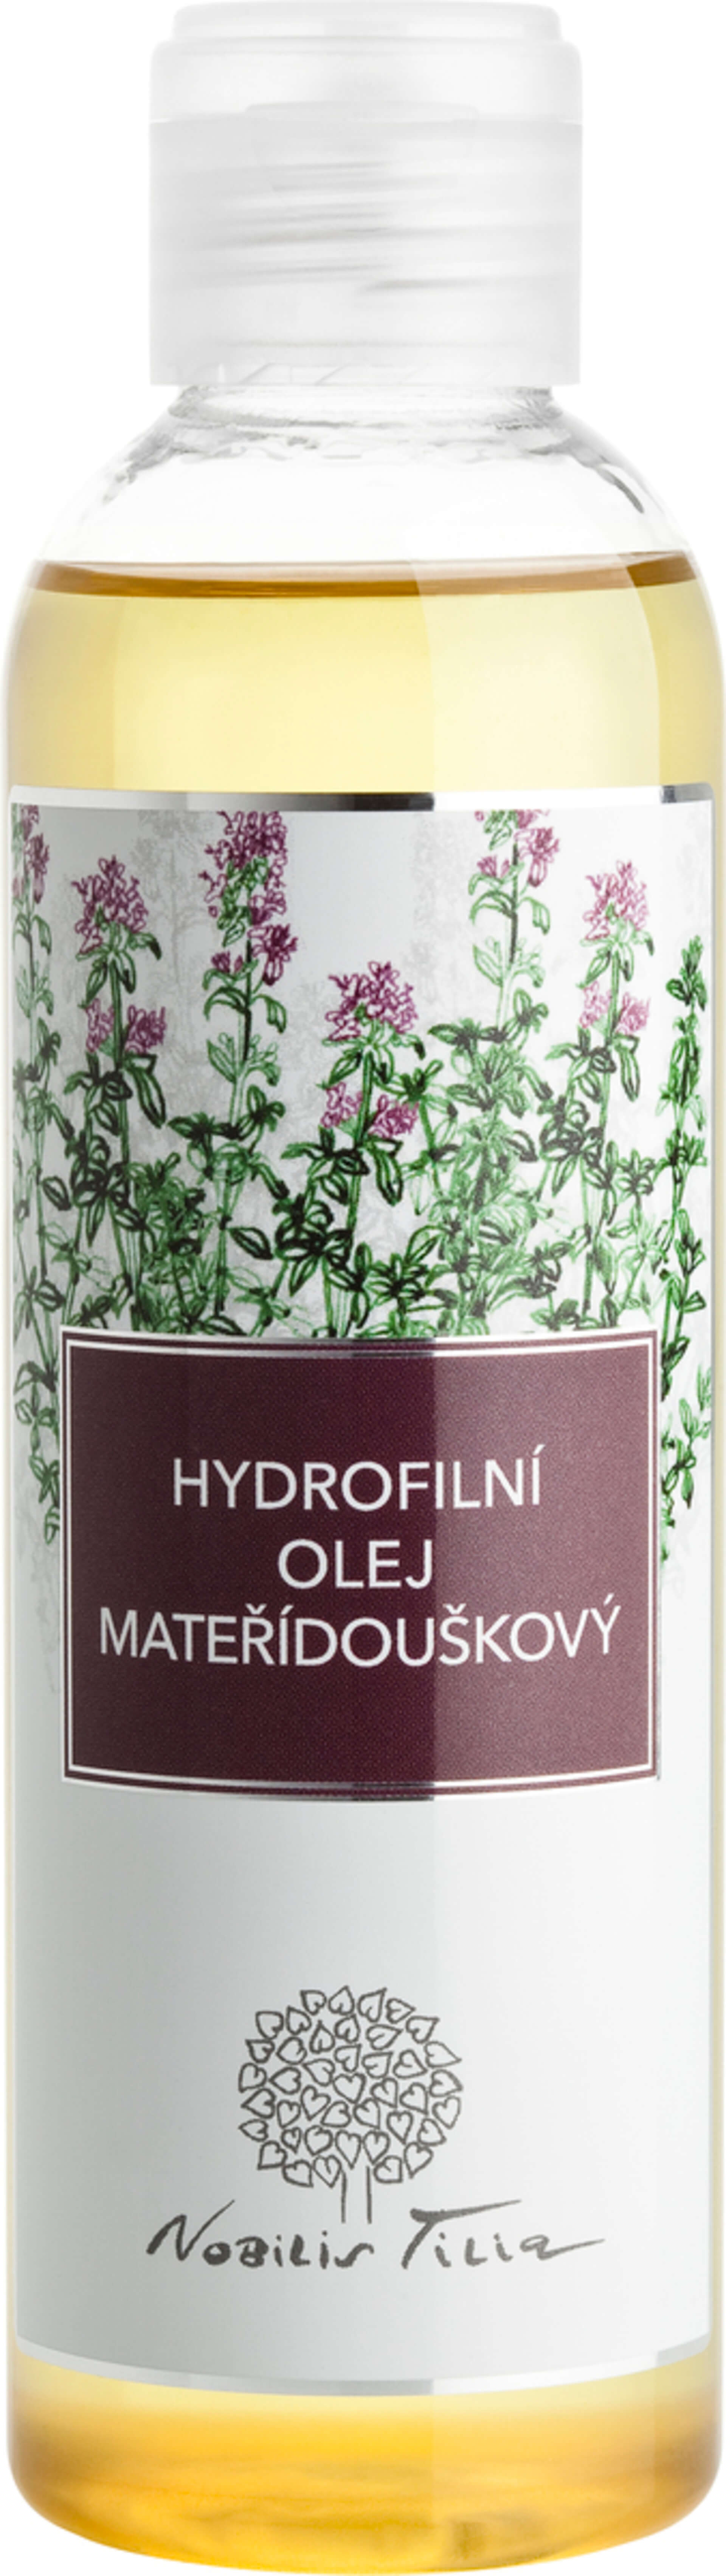 E-shop Nobilis Tilia Hydrofilný olej Materinodúškový 200 ml